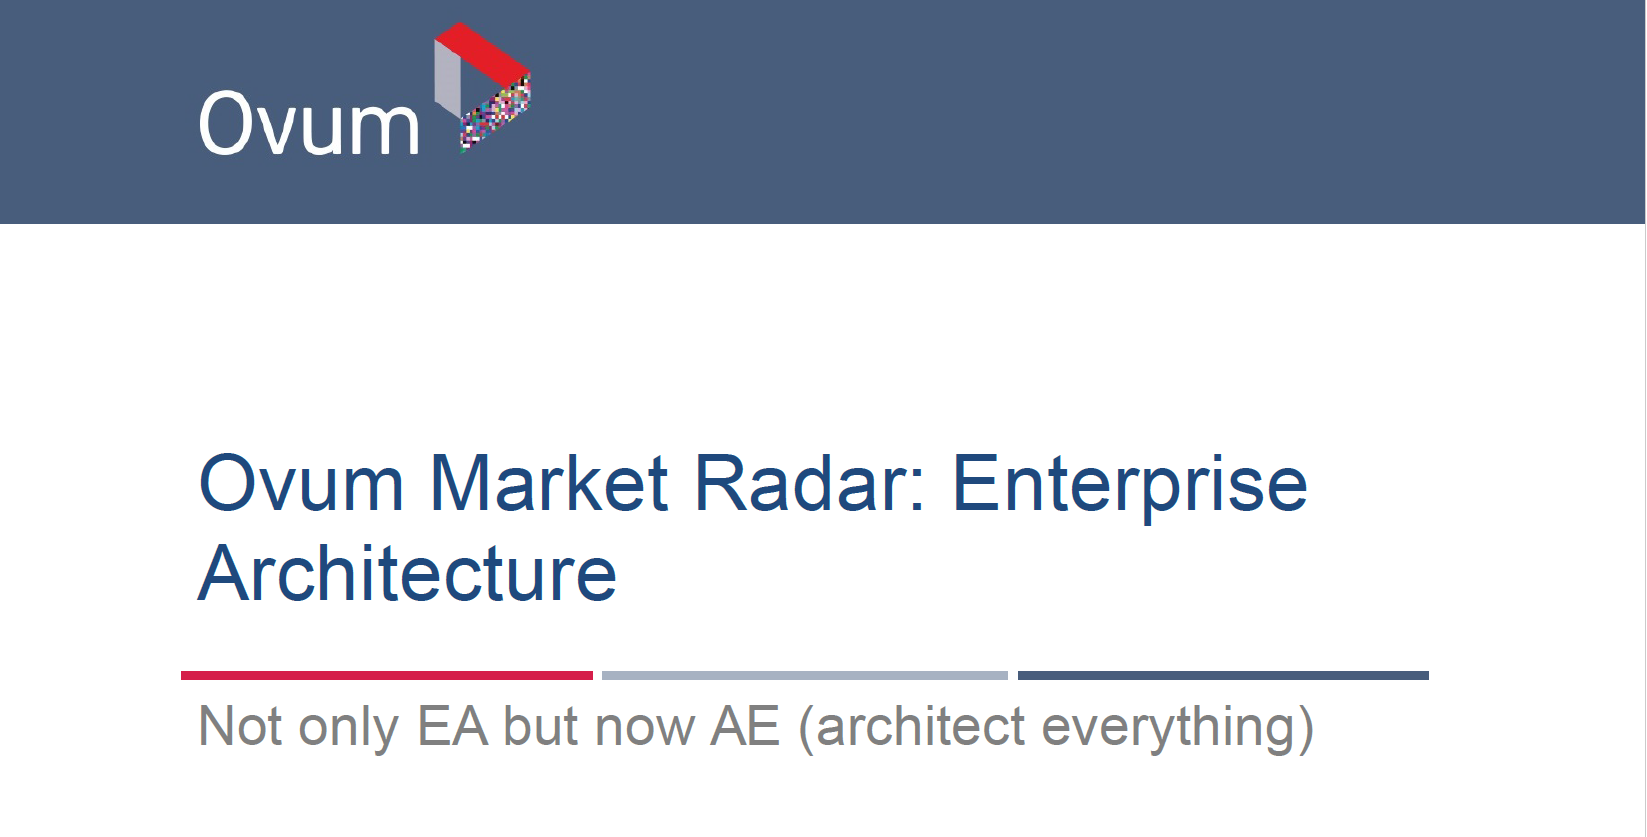 Ovum Market Radar: Enterprise Architecture